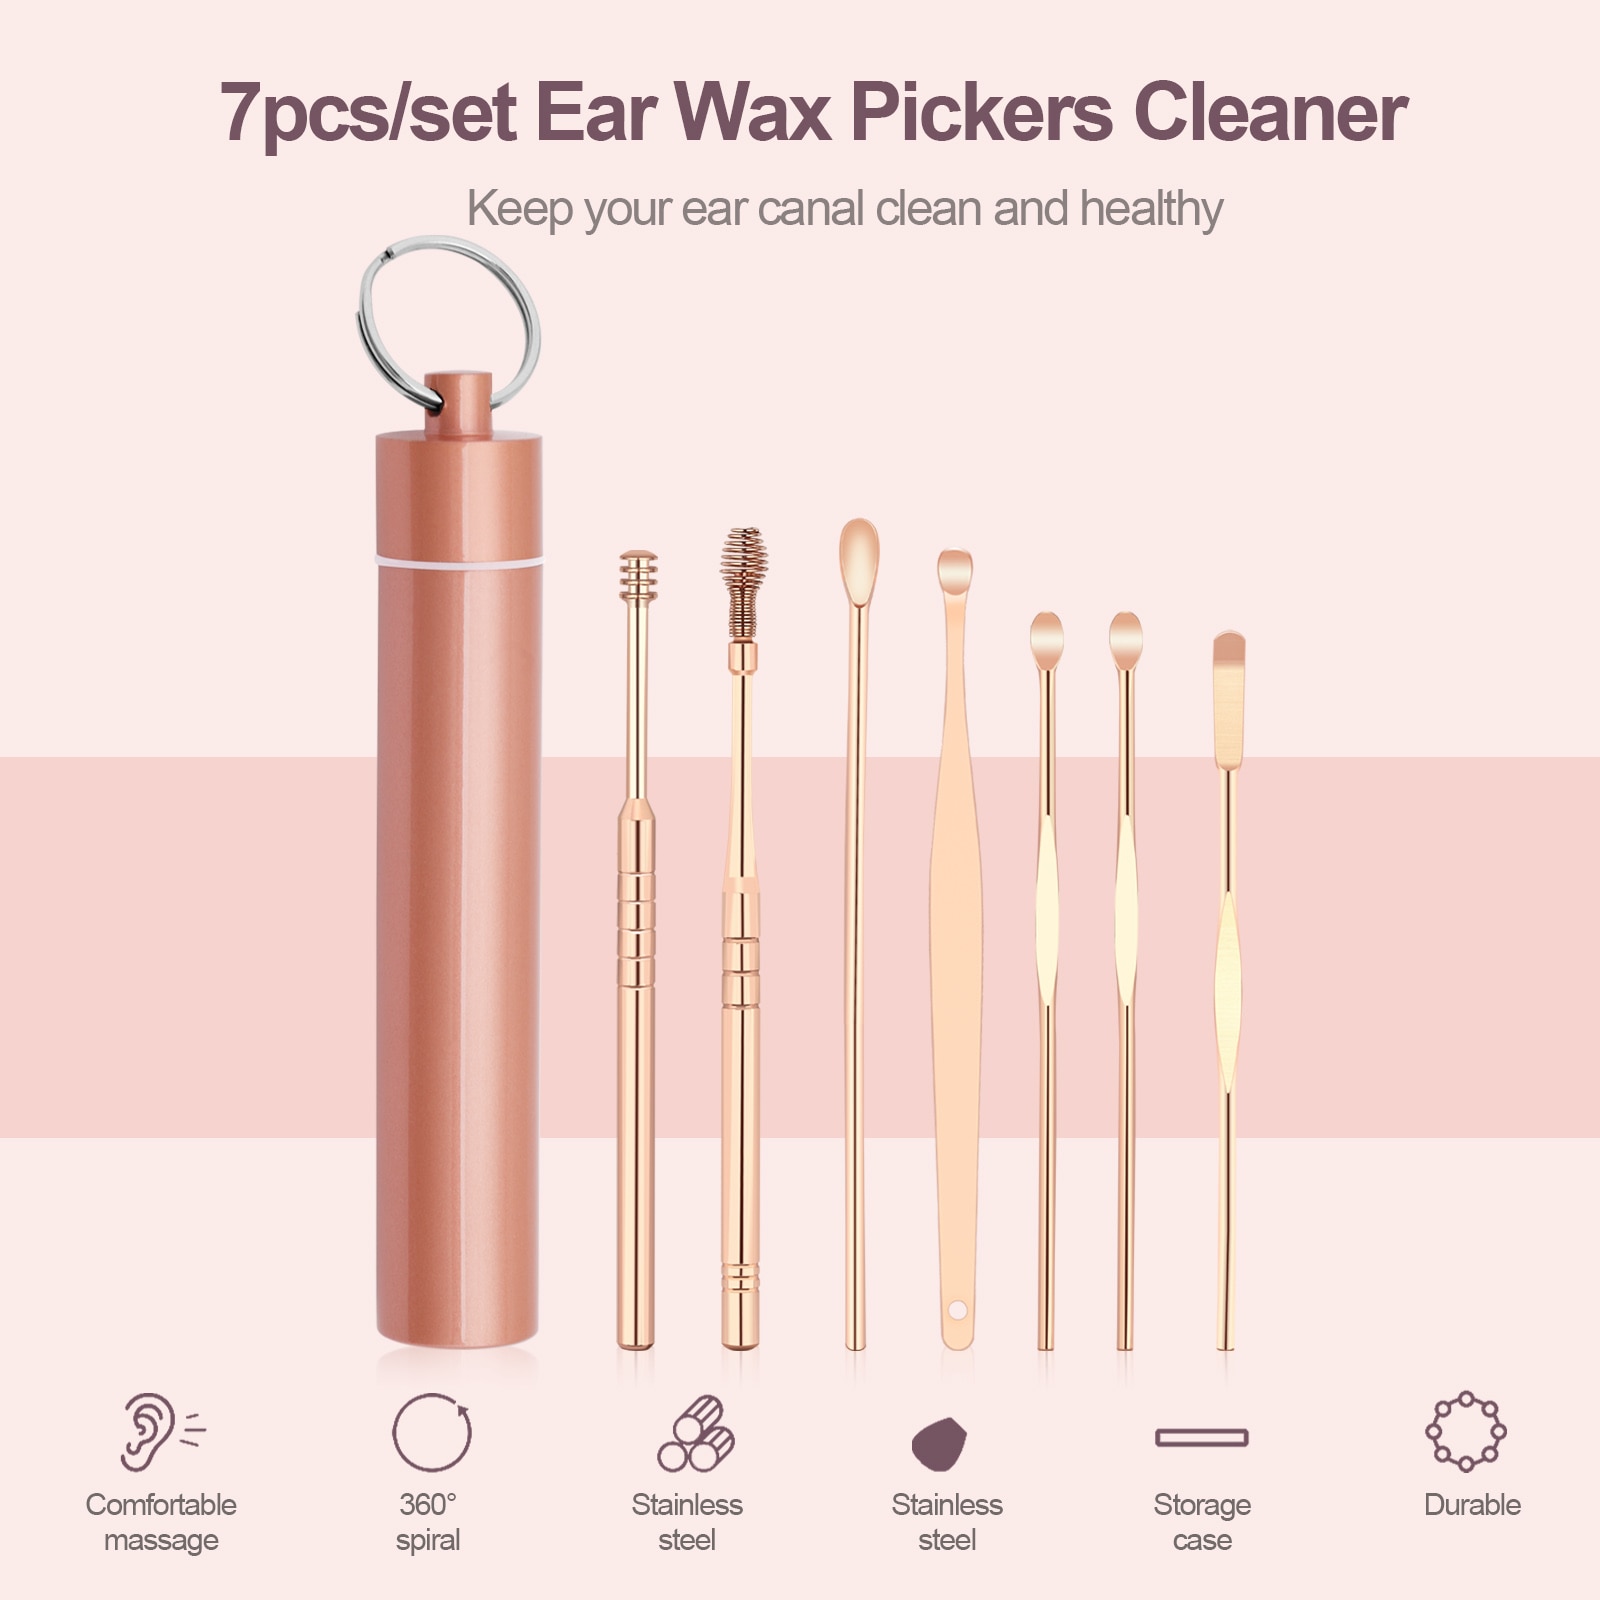 7 Stks/set Ear Wax Pickers Cleaner Rvs Earpick Wax Remover Curette Oor Pick Schoner Oor Schoner Lepel